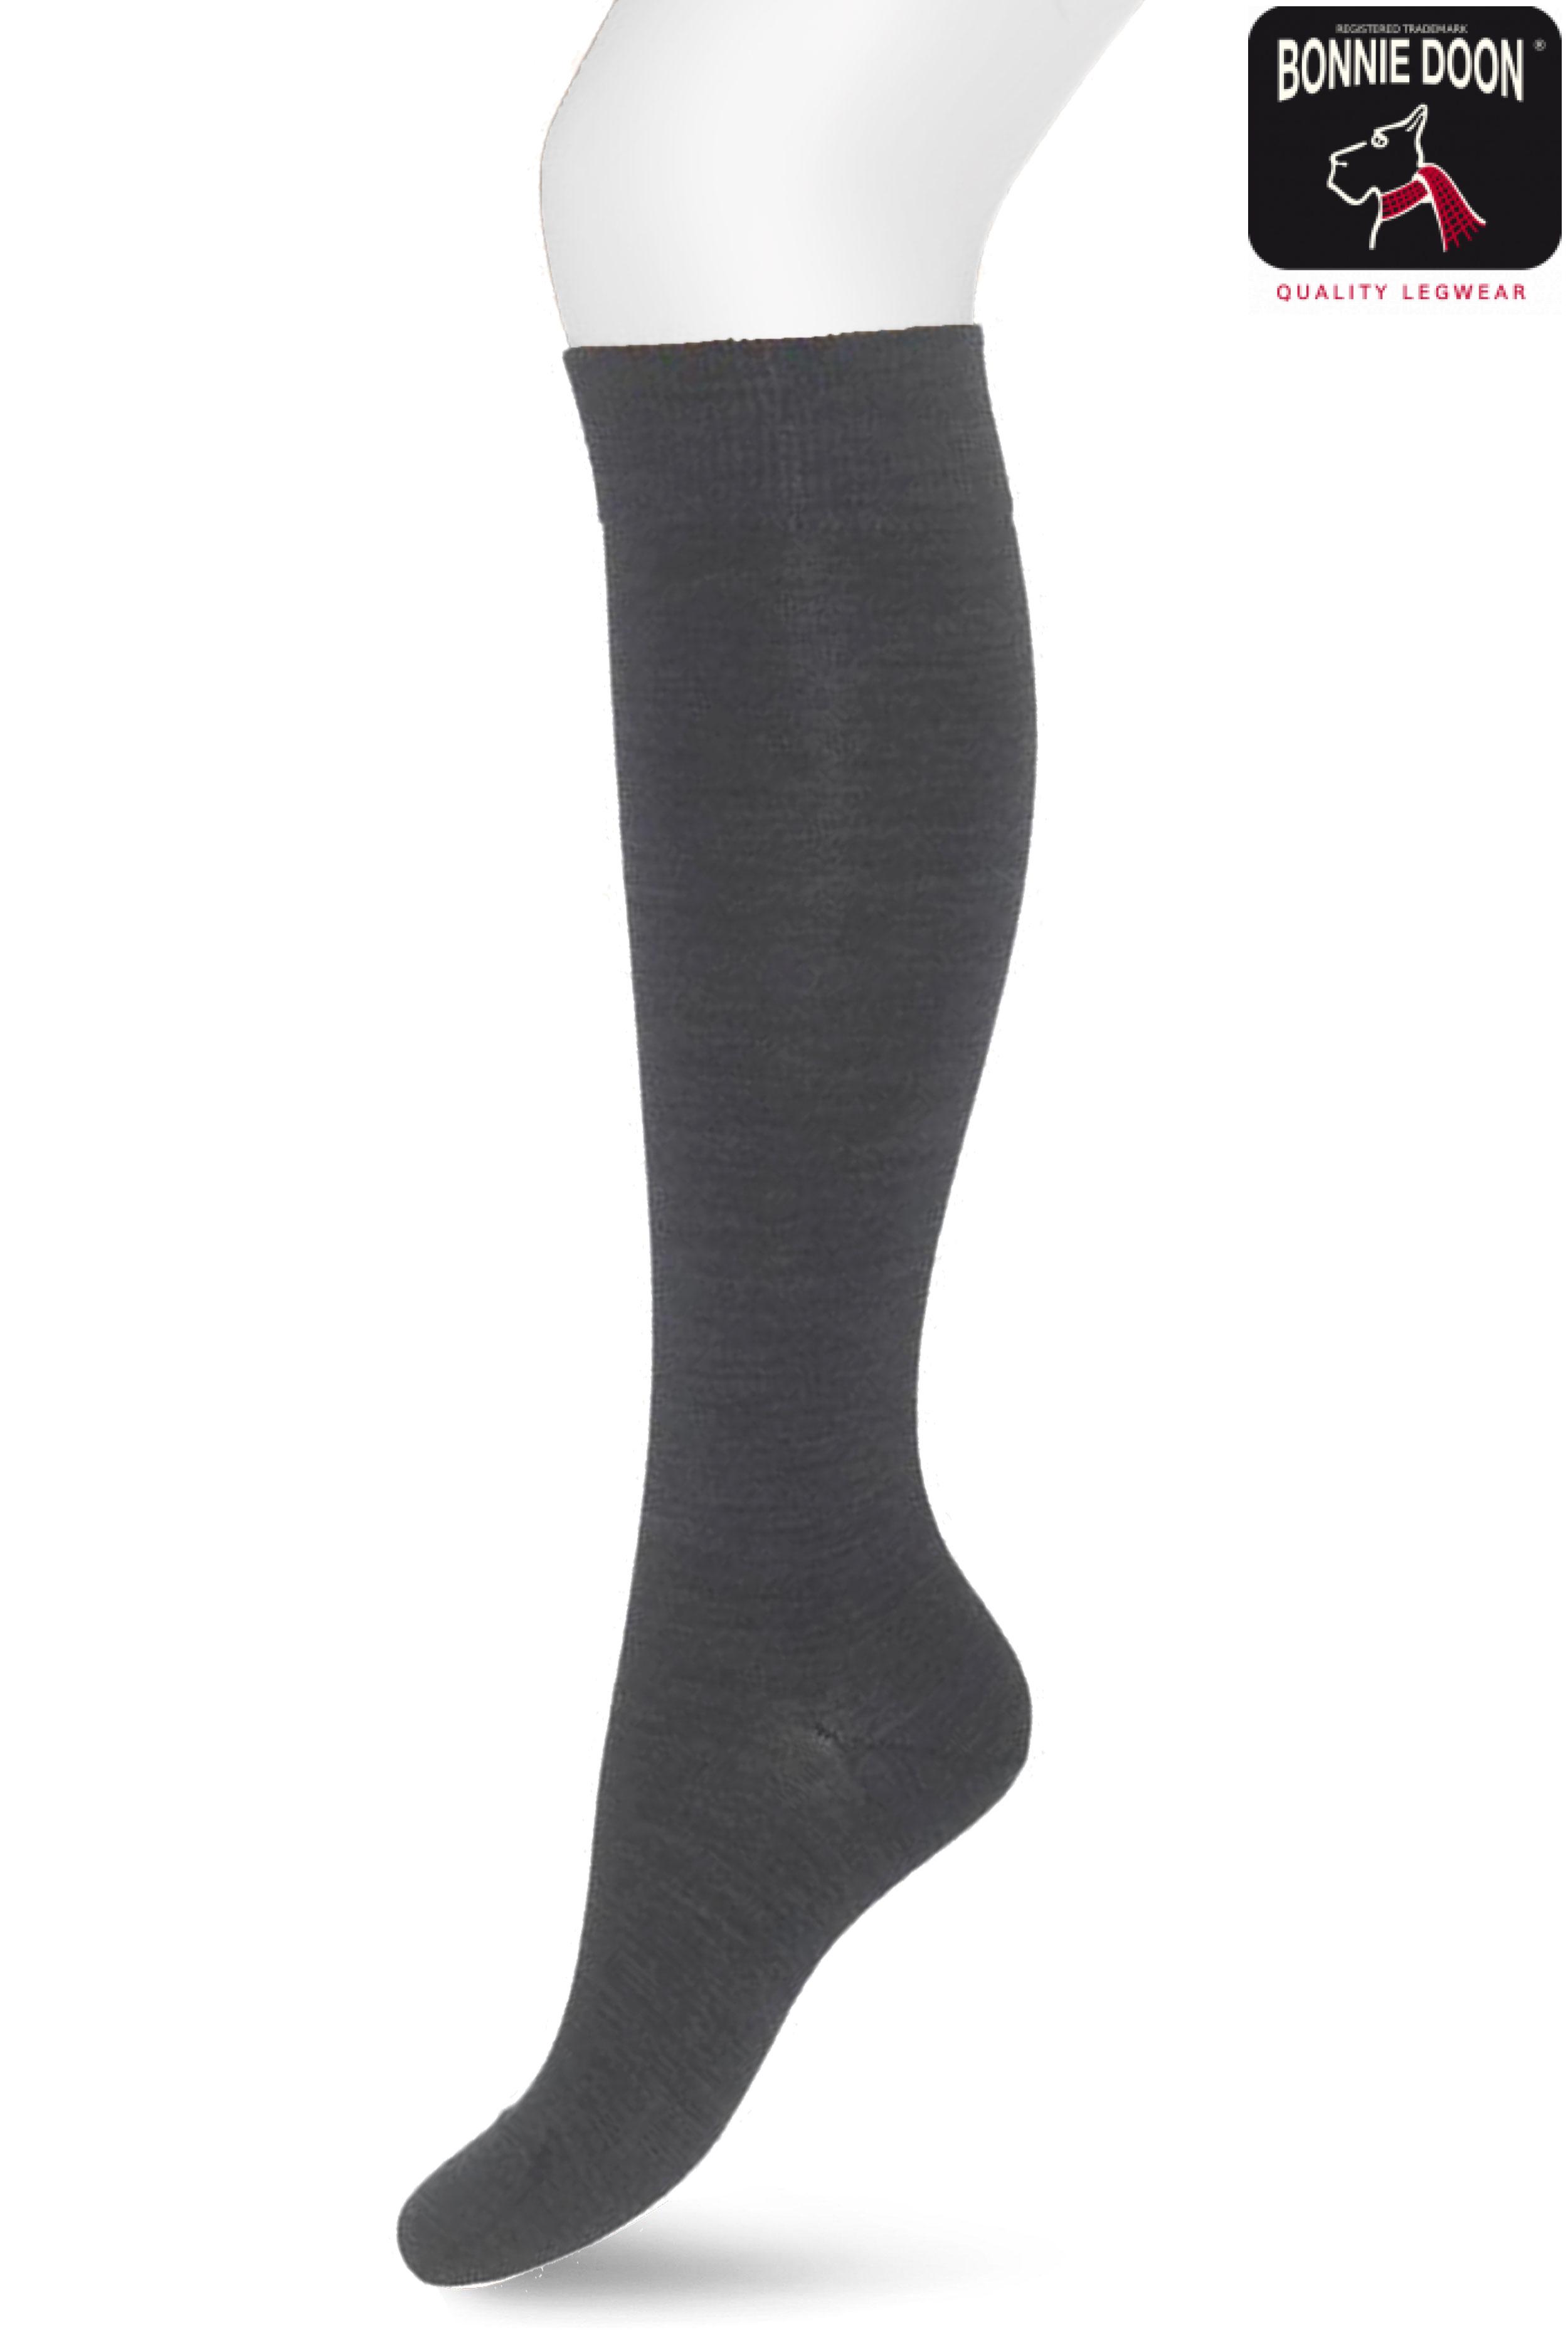 Wool/Cotton Knee-High Dark grey heather